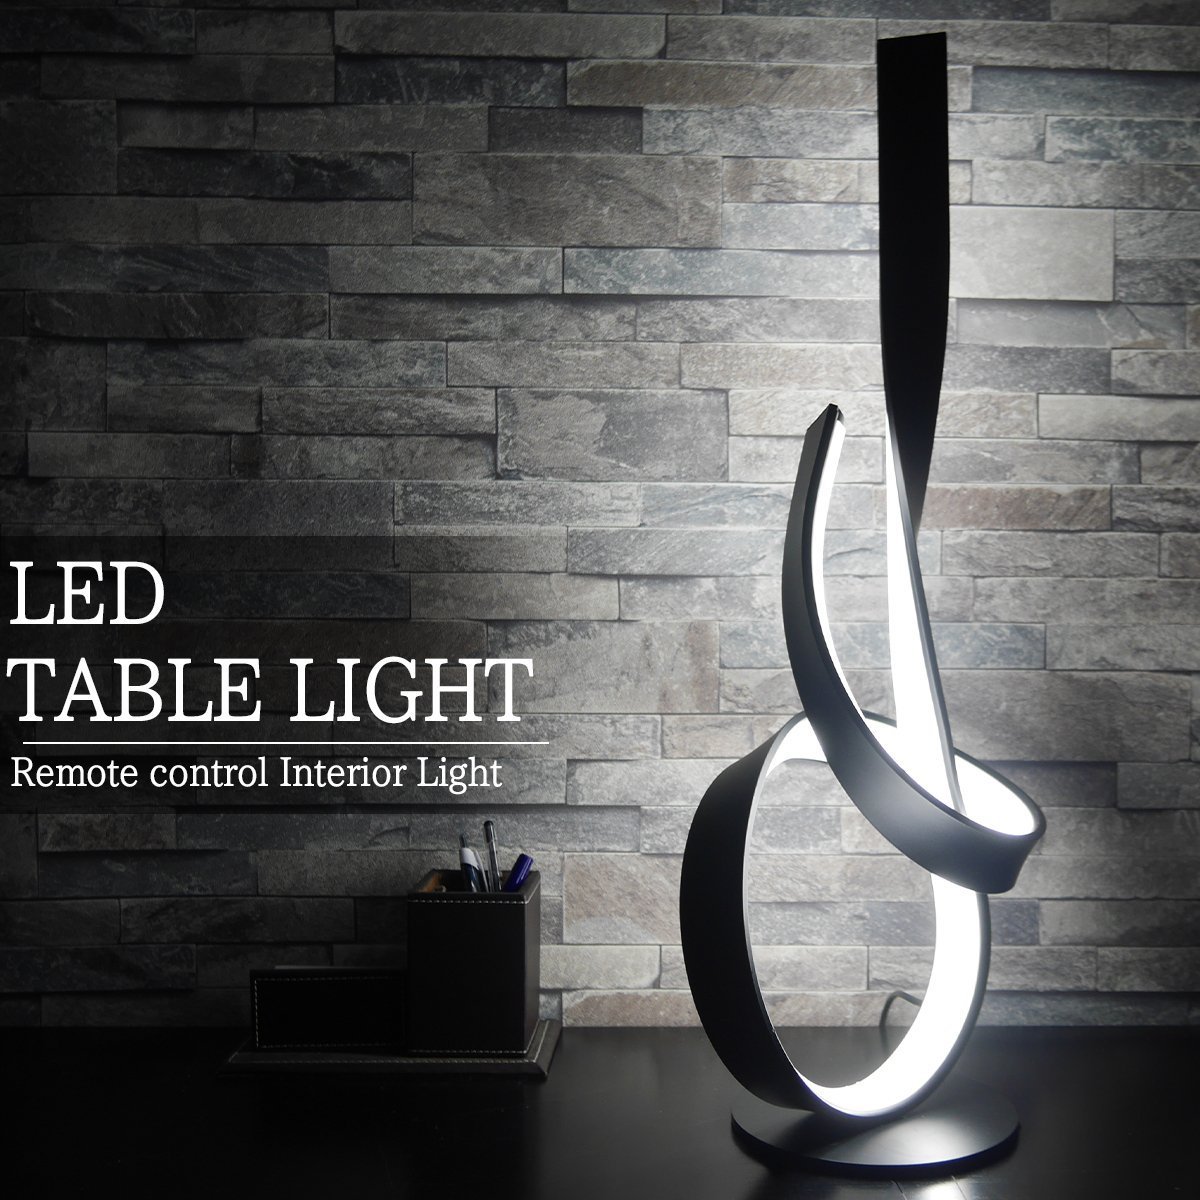 LED テーブルライト 間接照明 デスクスタンド インテリア デザイナー照明 北欧 寝室 高級 モダン おしゃれ 調色調光 bluetooth TL-21BK